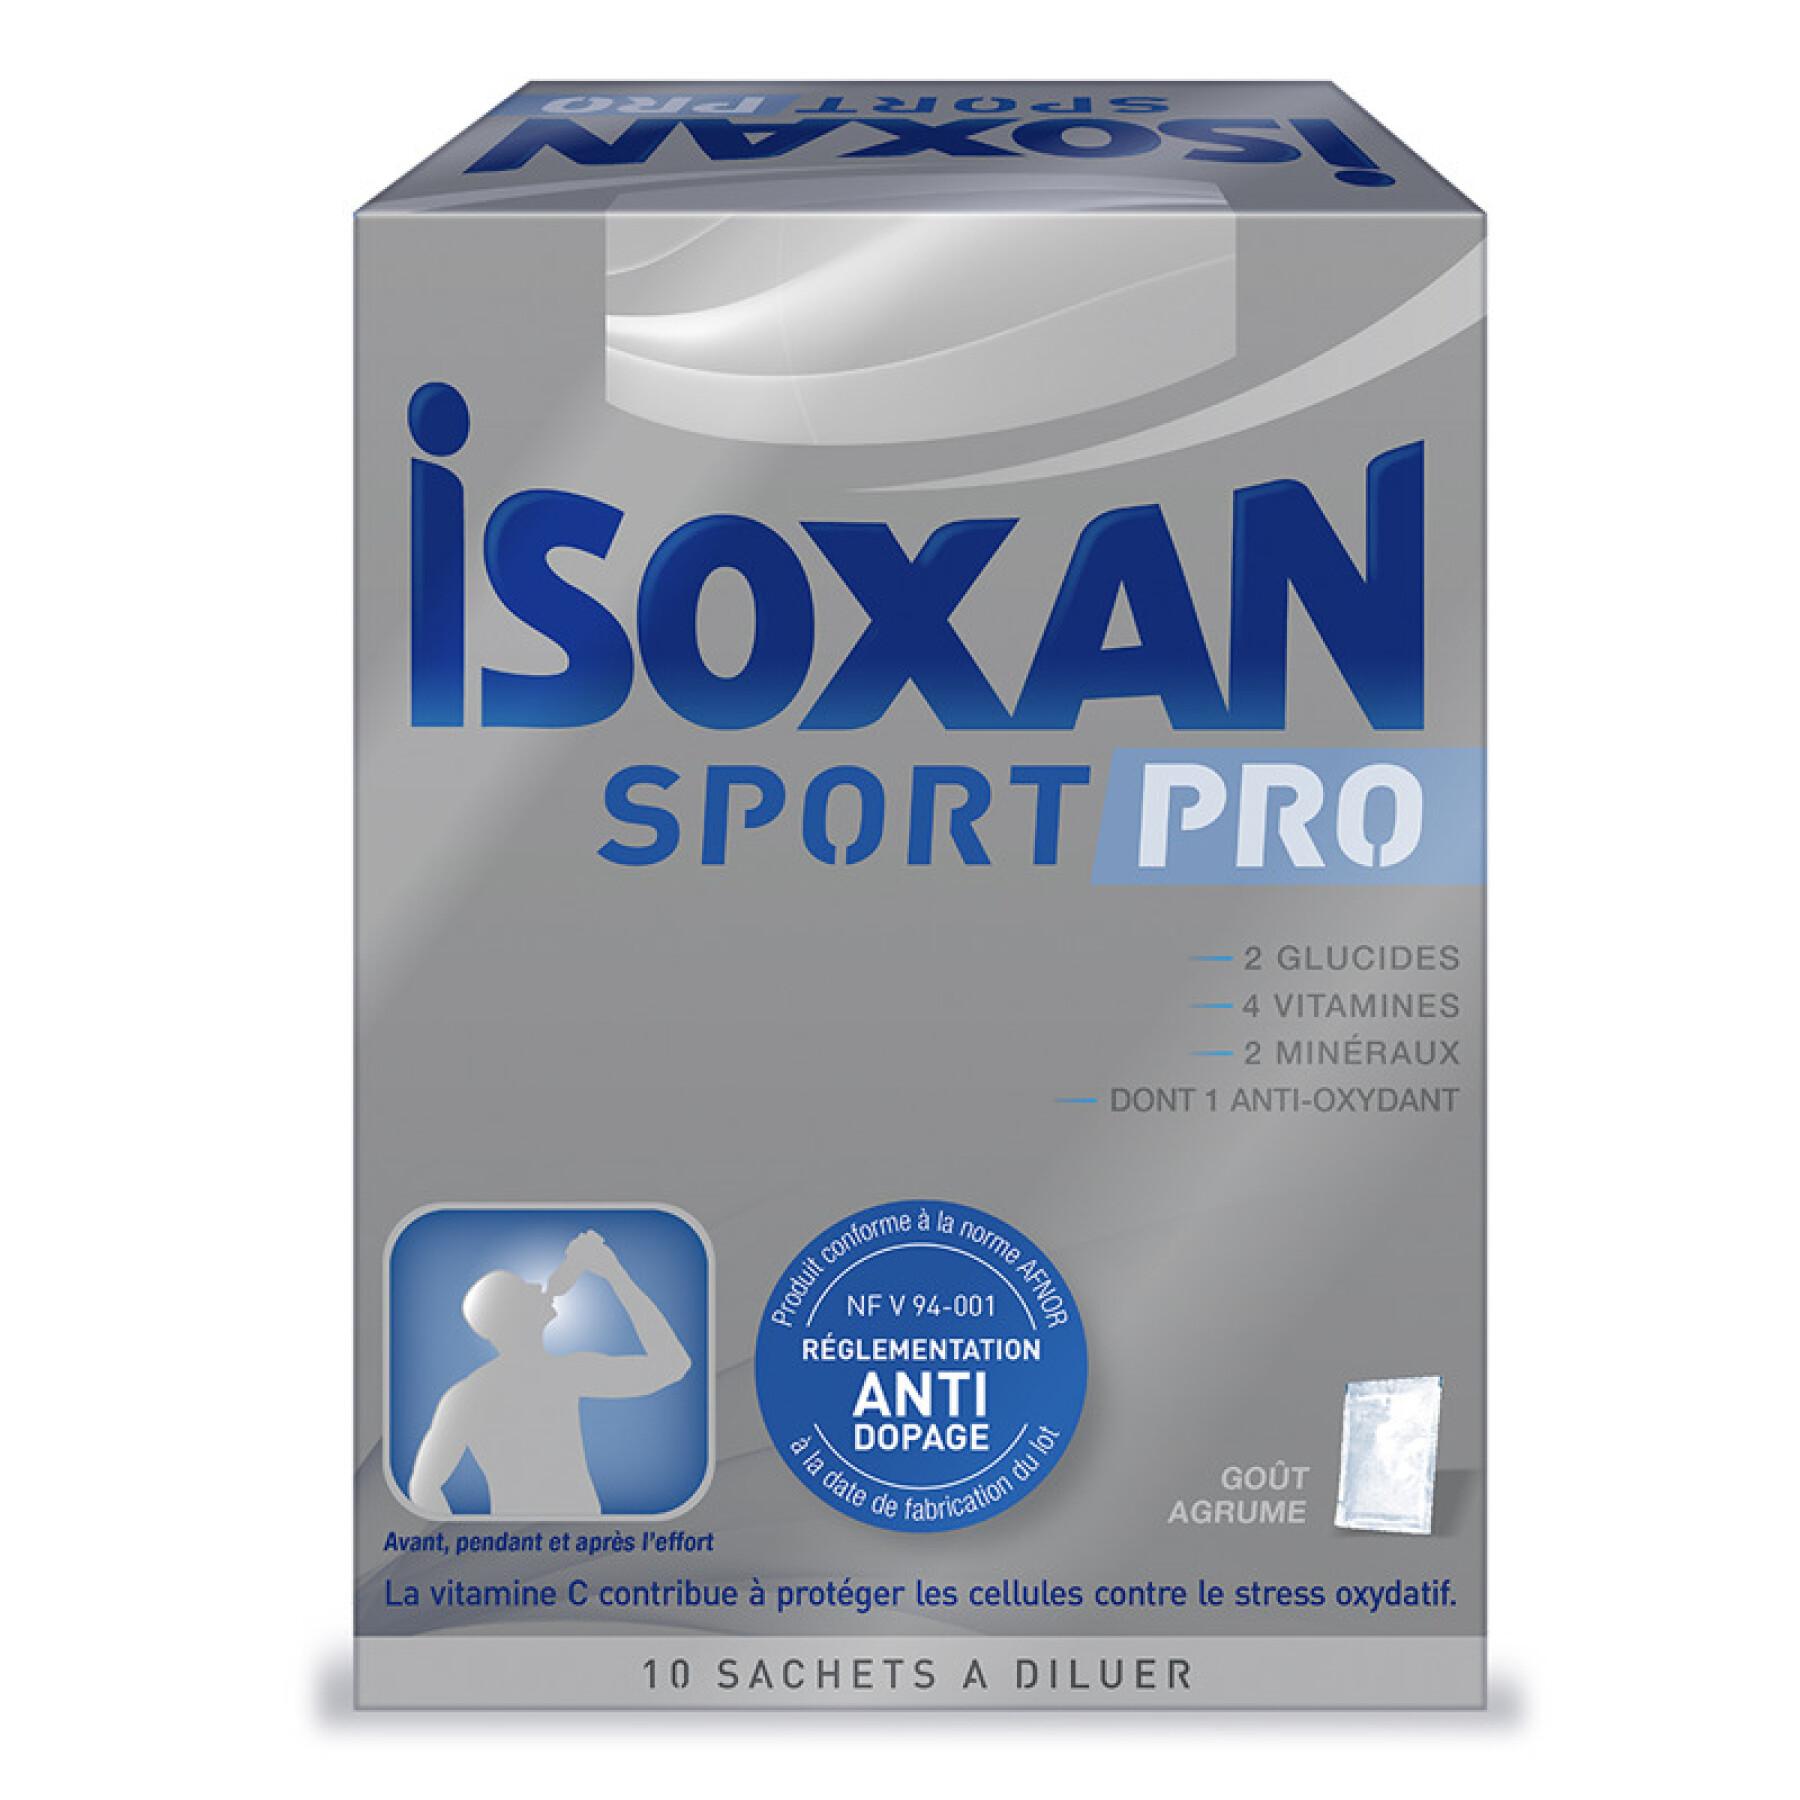 Complemento alimenticio para deportistas Isoxan Pro